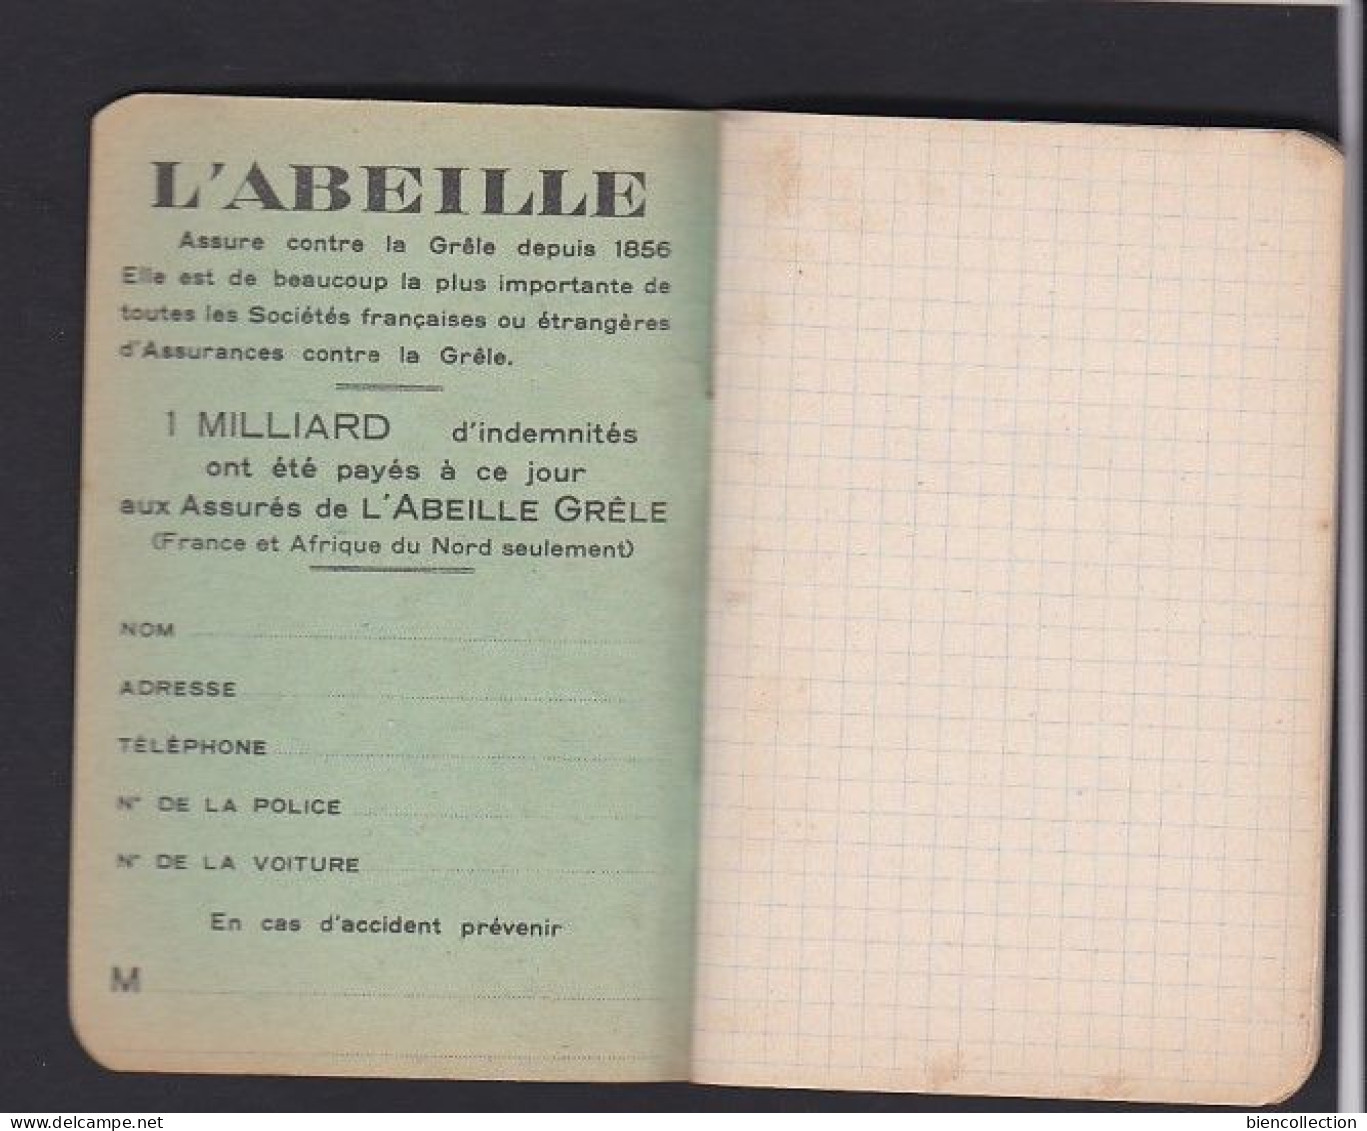 Petit Carnet De Note "publicité L'abeille" ; 40 Pages ; Carnet Neuf Sans Aucunes Inscriptions. 12cm X 8cm - Material Und Zubehör